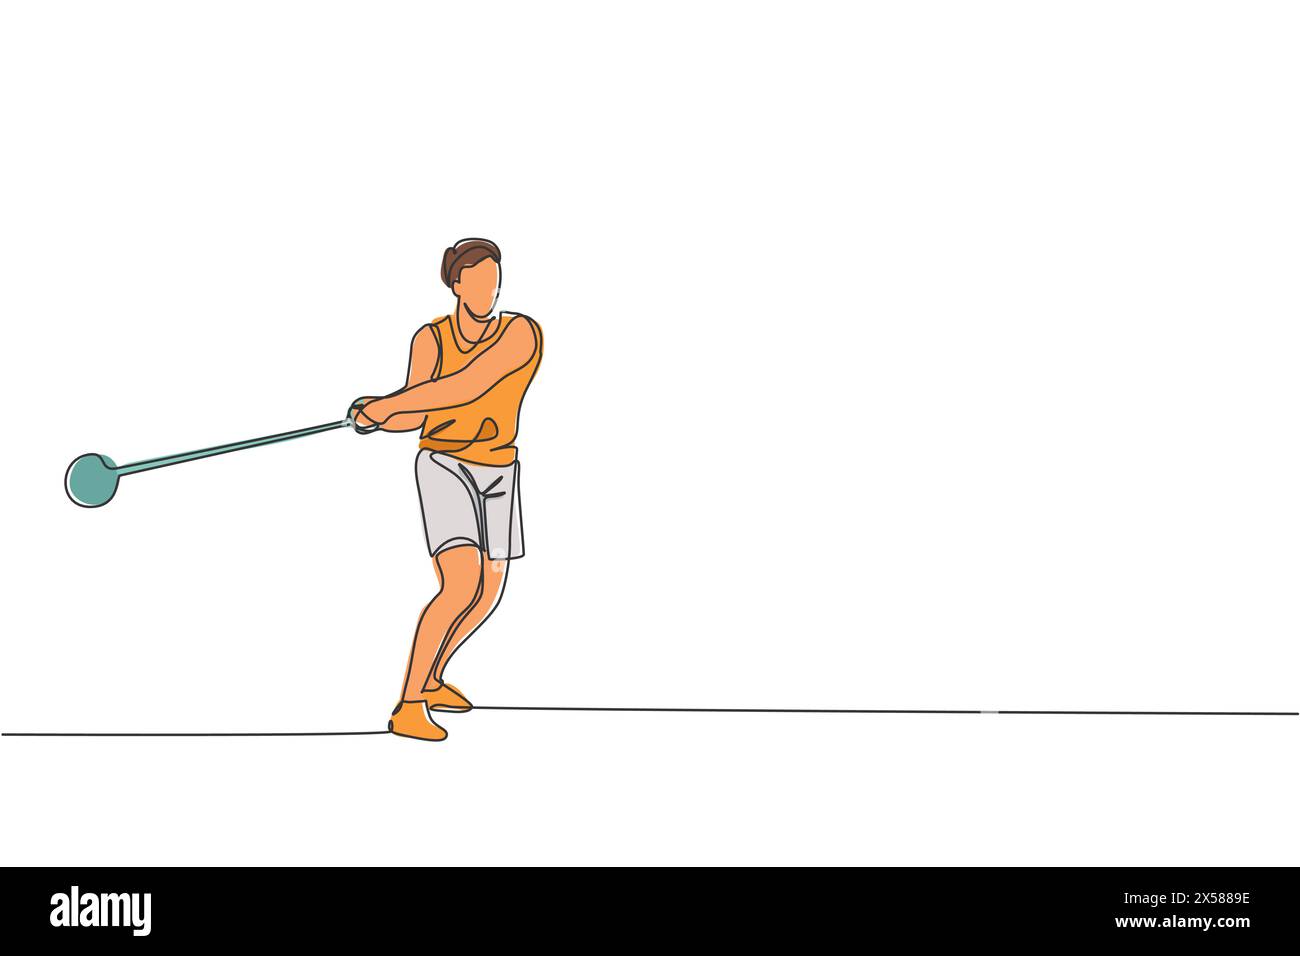 Un dessin simple ligne de jeune exercice d'homme énergique pour lancer le marteau puissamment sur l'illustration graphique vectorielle de champ. Mode de vie sain athlétique sp Illustration de Vecteur